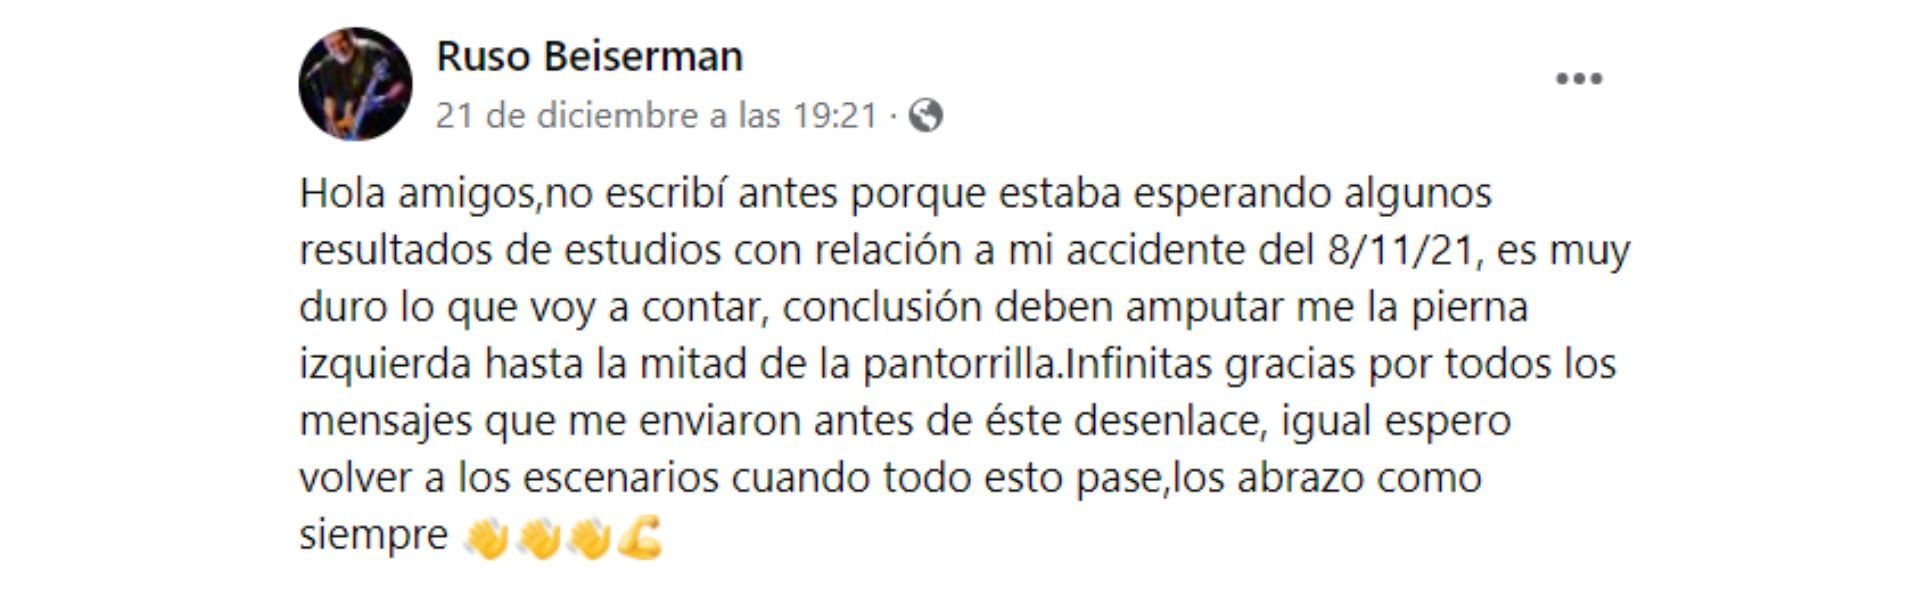 Ruso Beiserman comunica el lamentable desenlace de su accidente